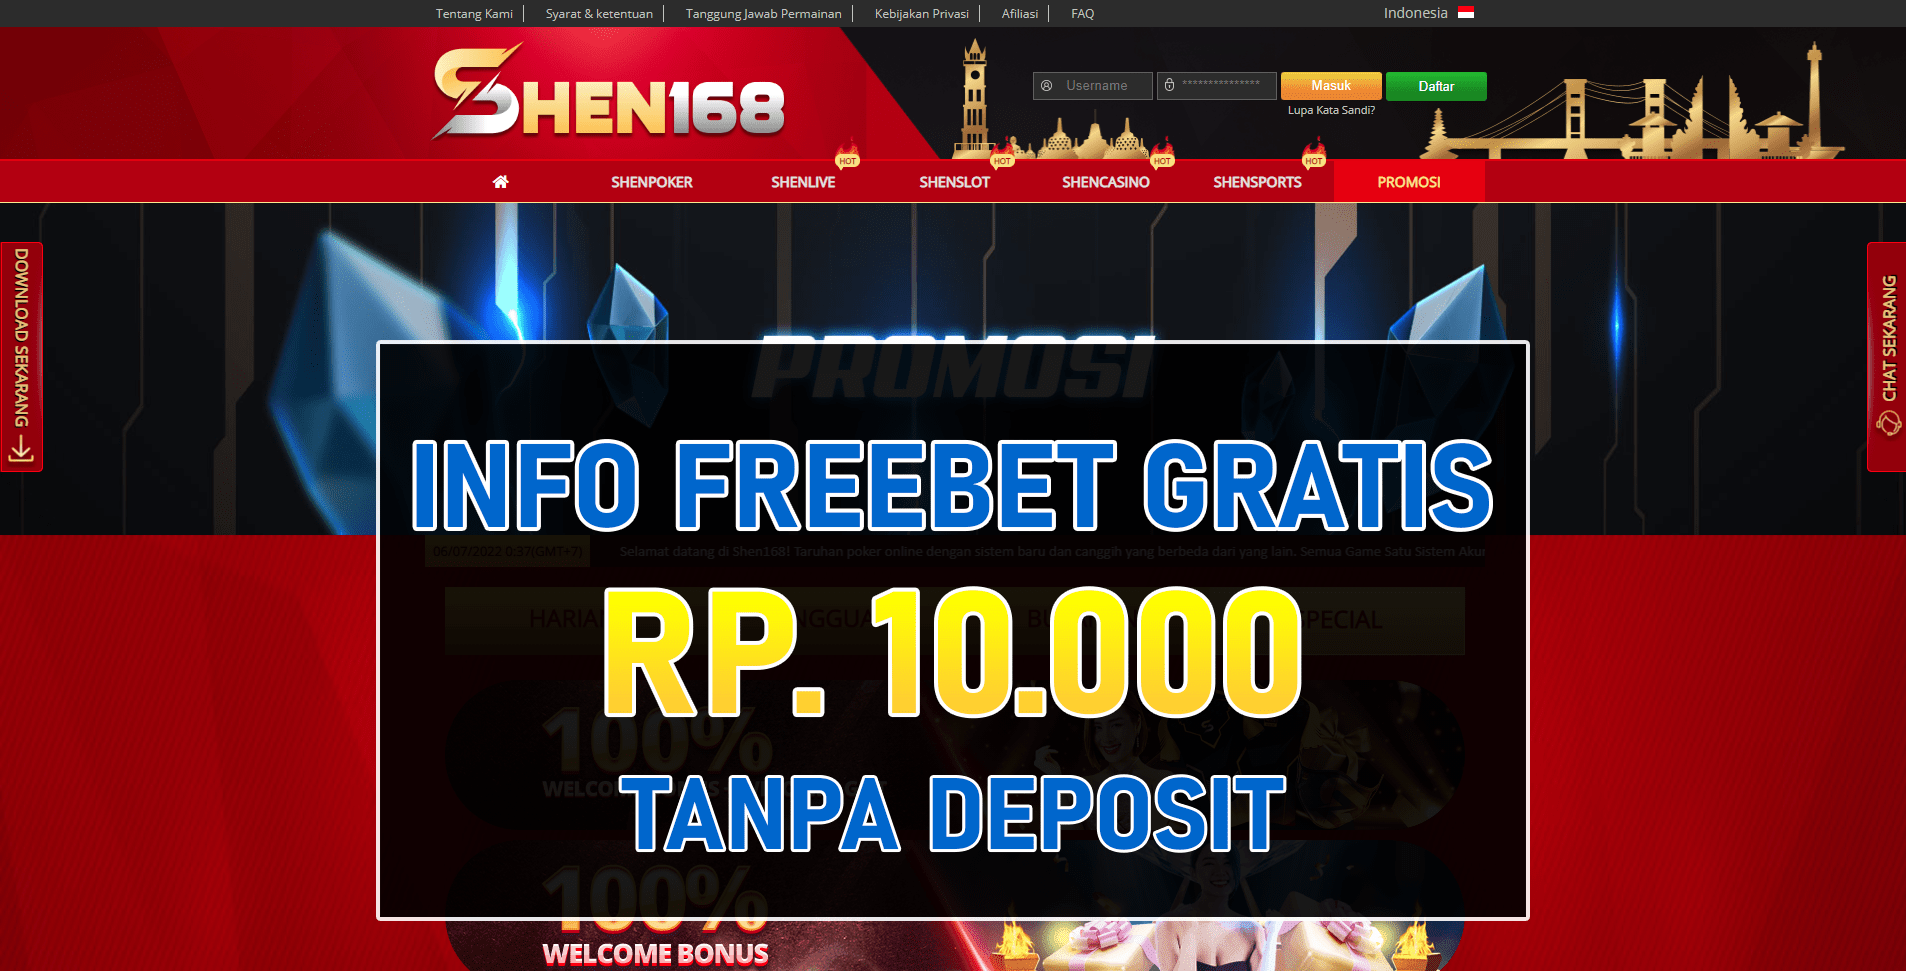 Freebet Gratis Shen168